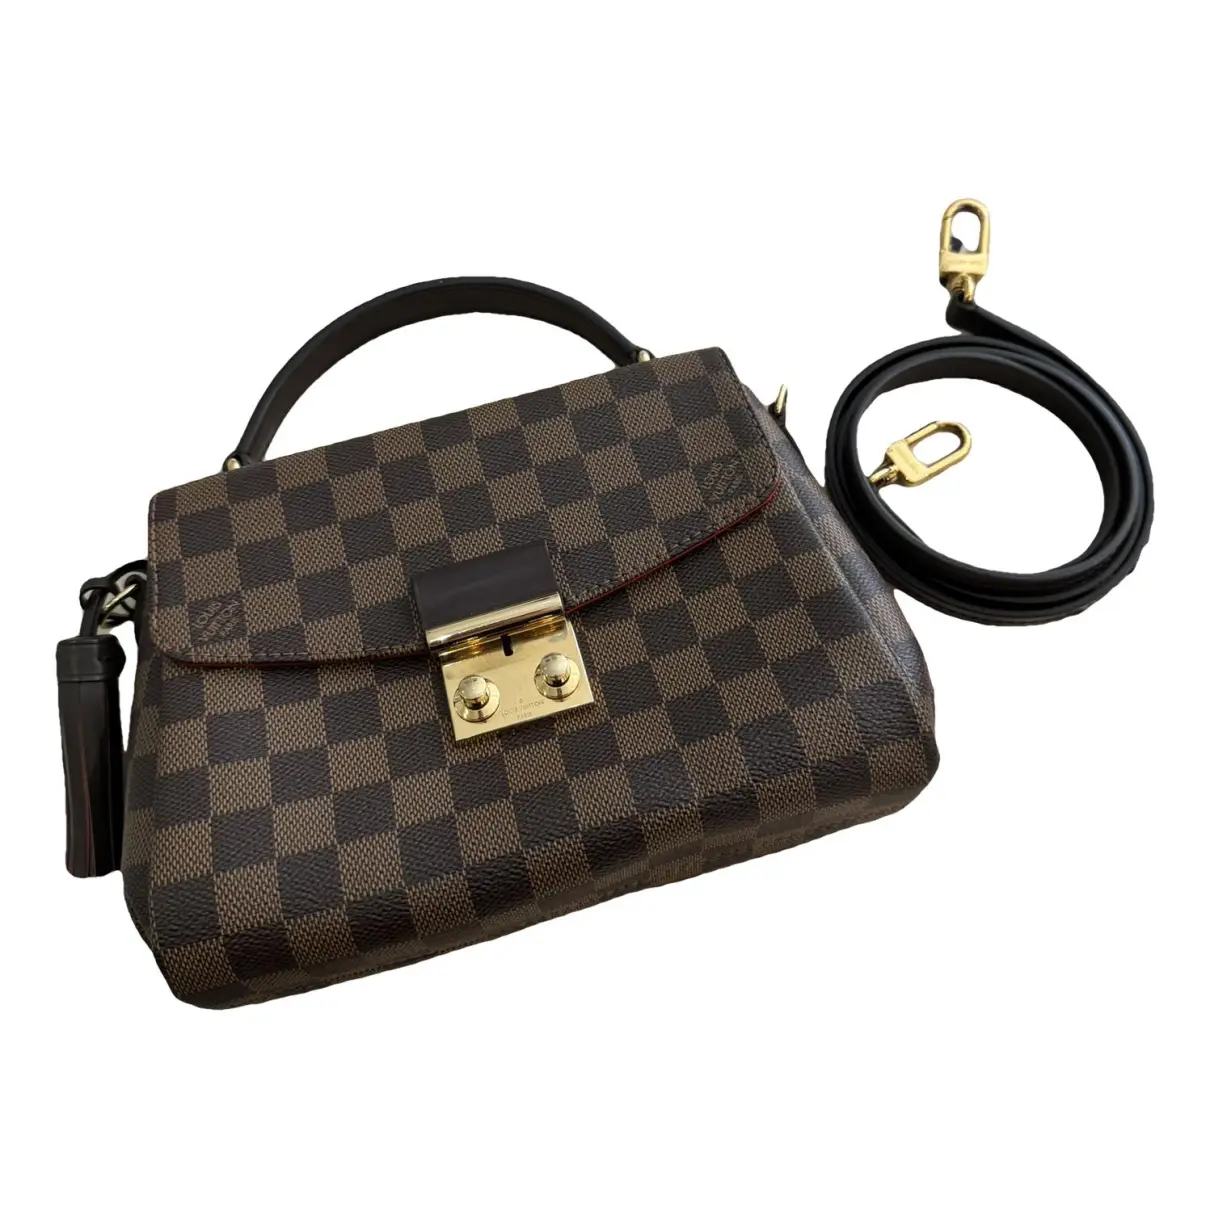 Croisette leather handbag